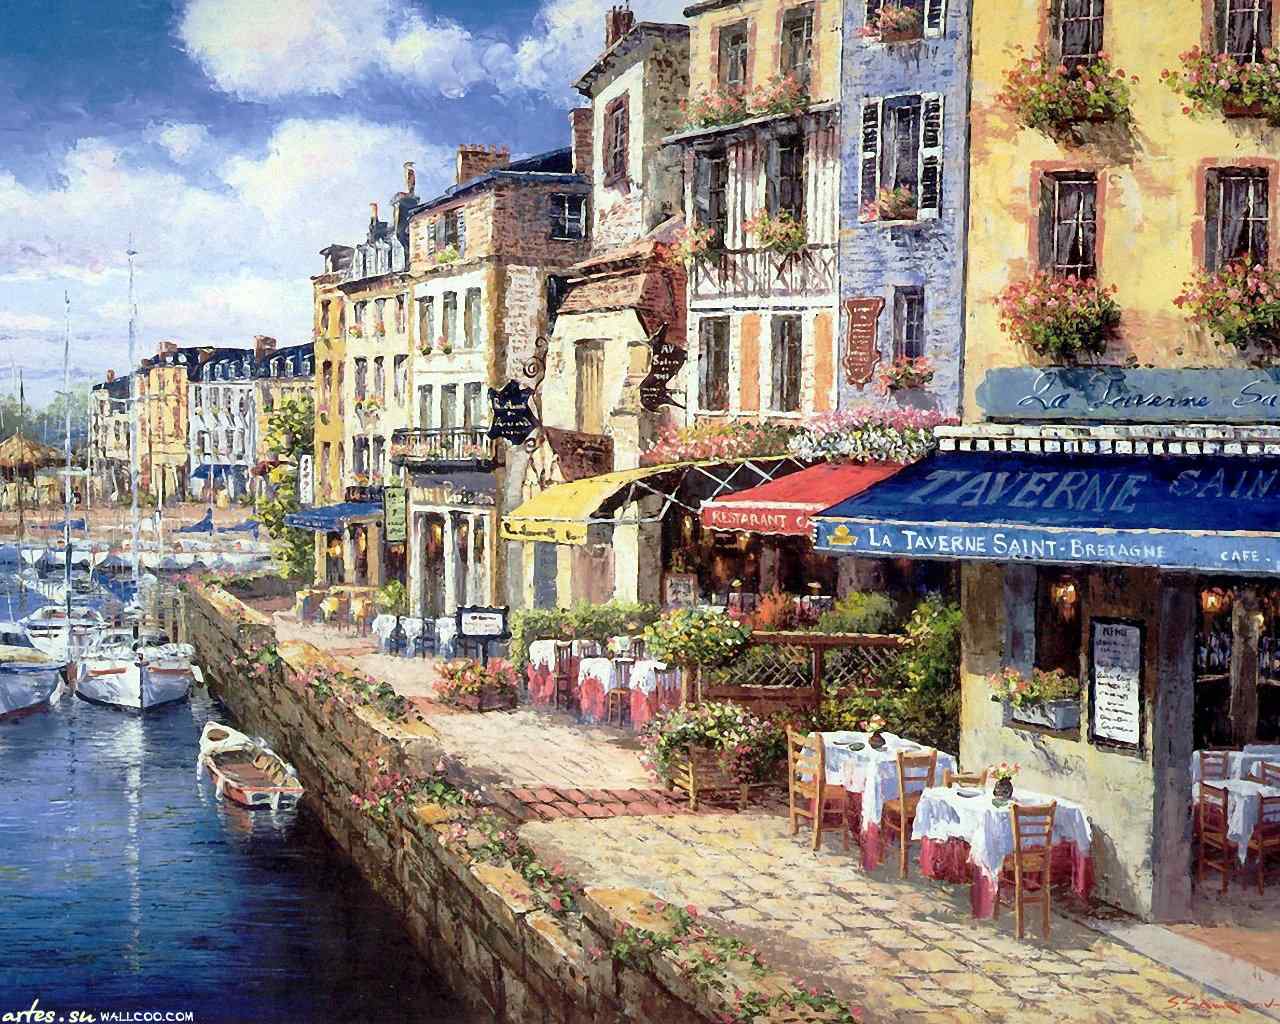 唯美的欧洲小镇风景图片桌面壁纸